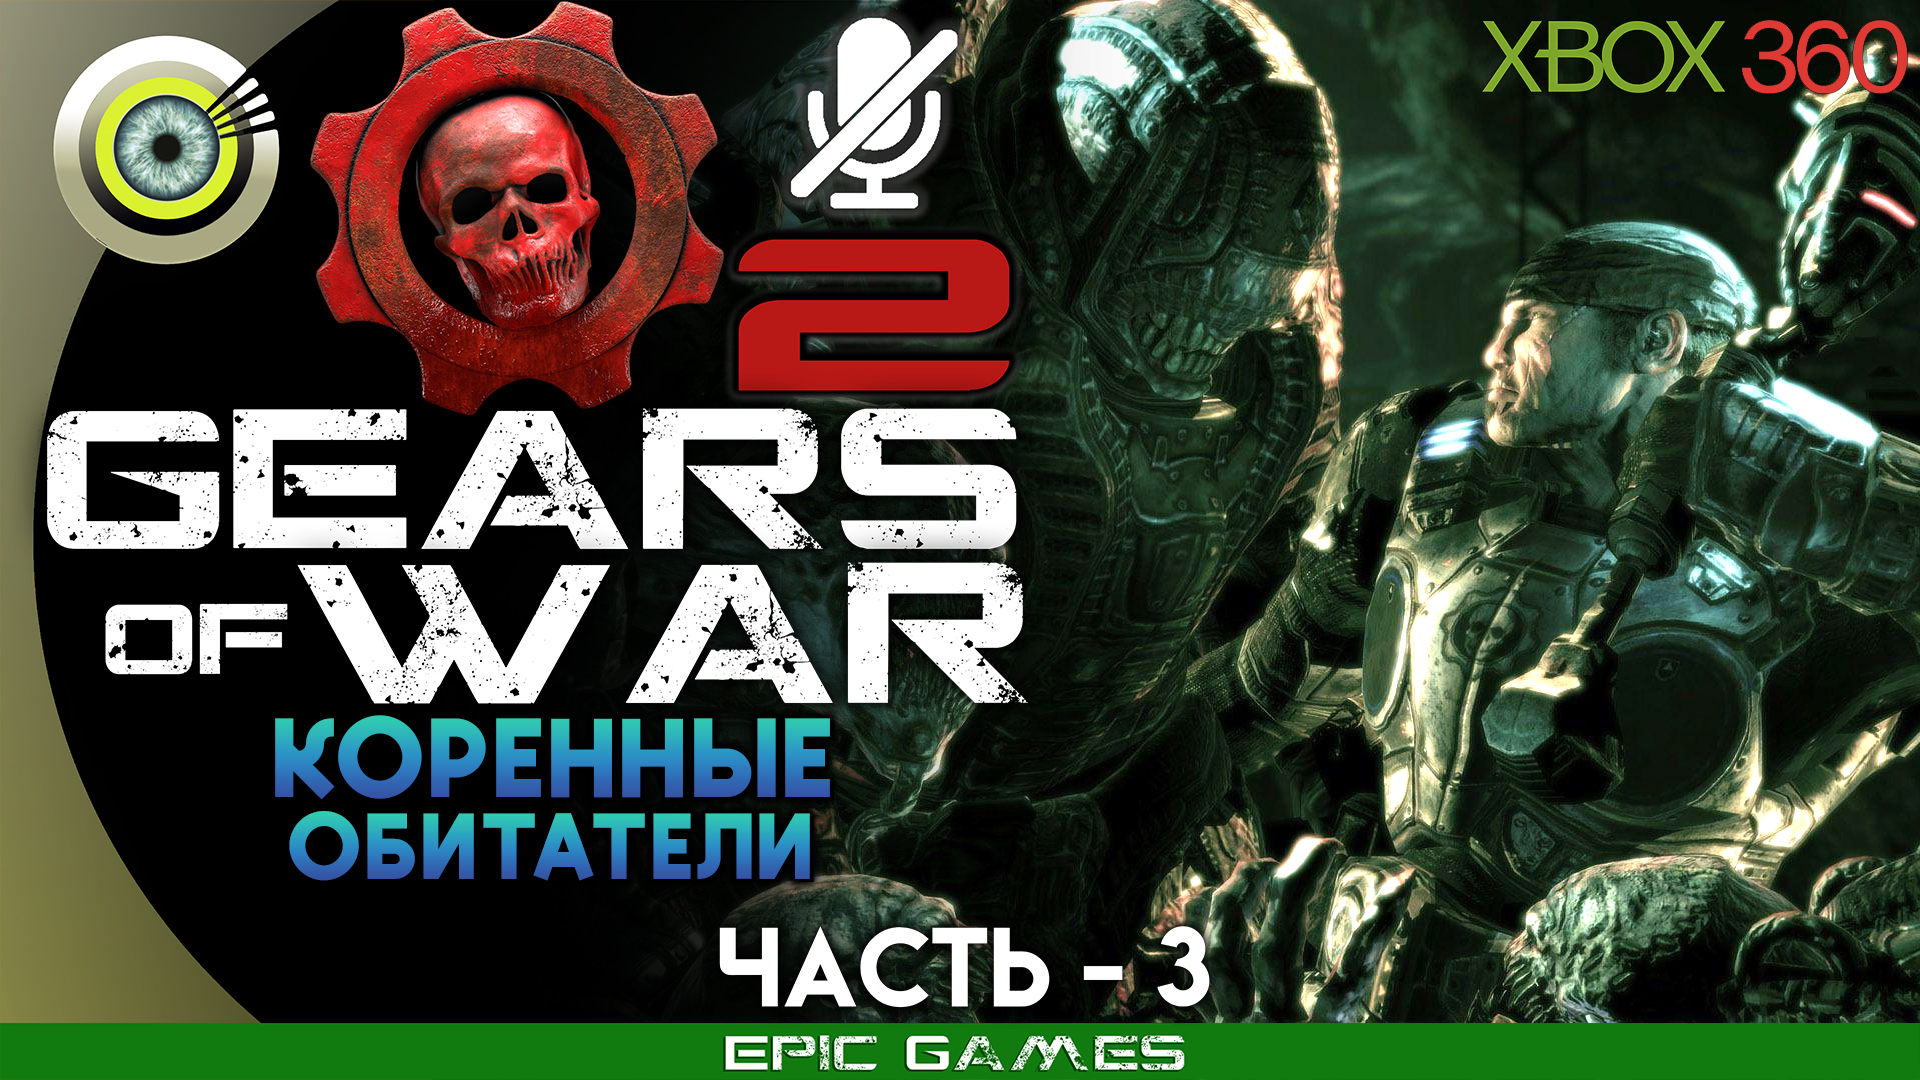 «Коренные обитатели» | 100% Прохождение Gears of War 2 (Xbox 360) Без комментариев — Часть 3